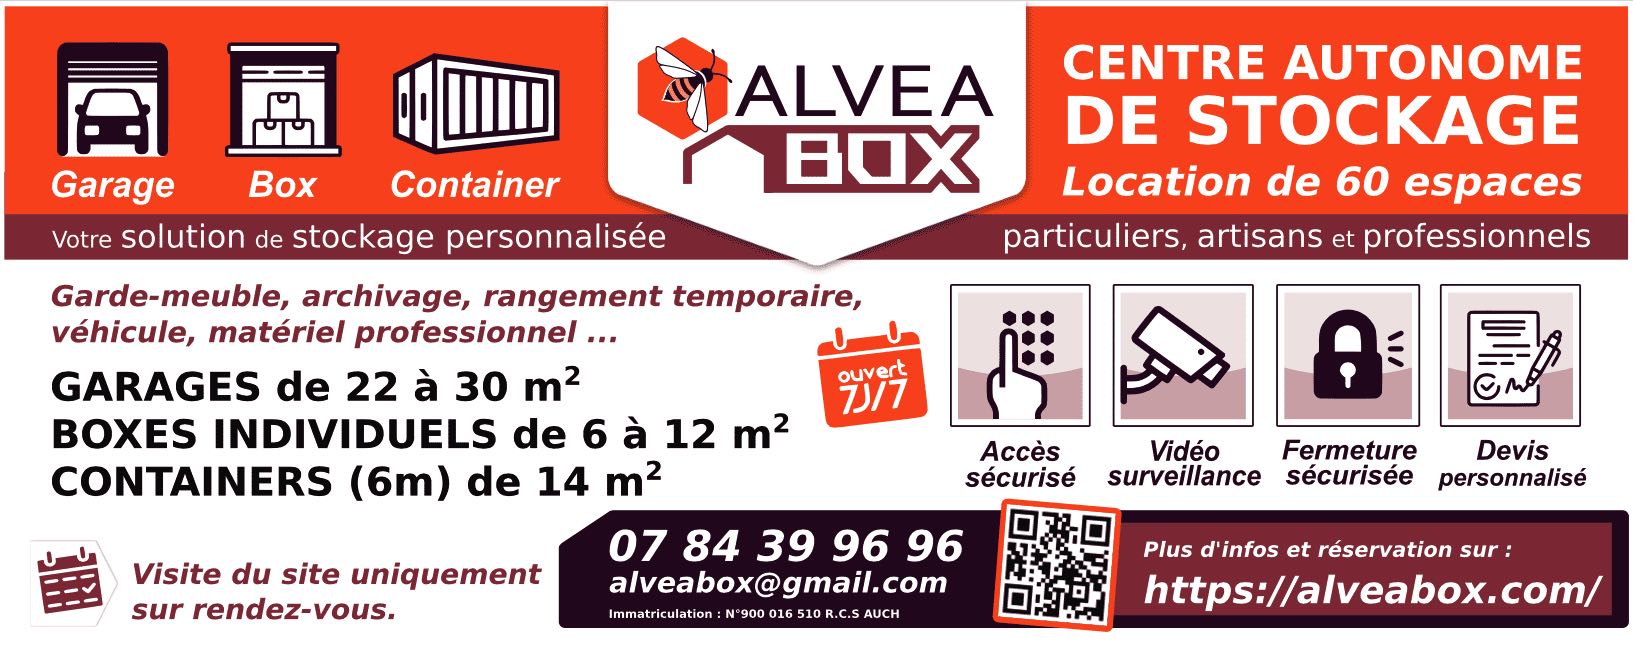 Brochure presentation : Alveabox espace de stockages, location de boxes, garages, containers, à Isle-Jourdain dans le Gers 32600. 